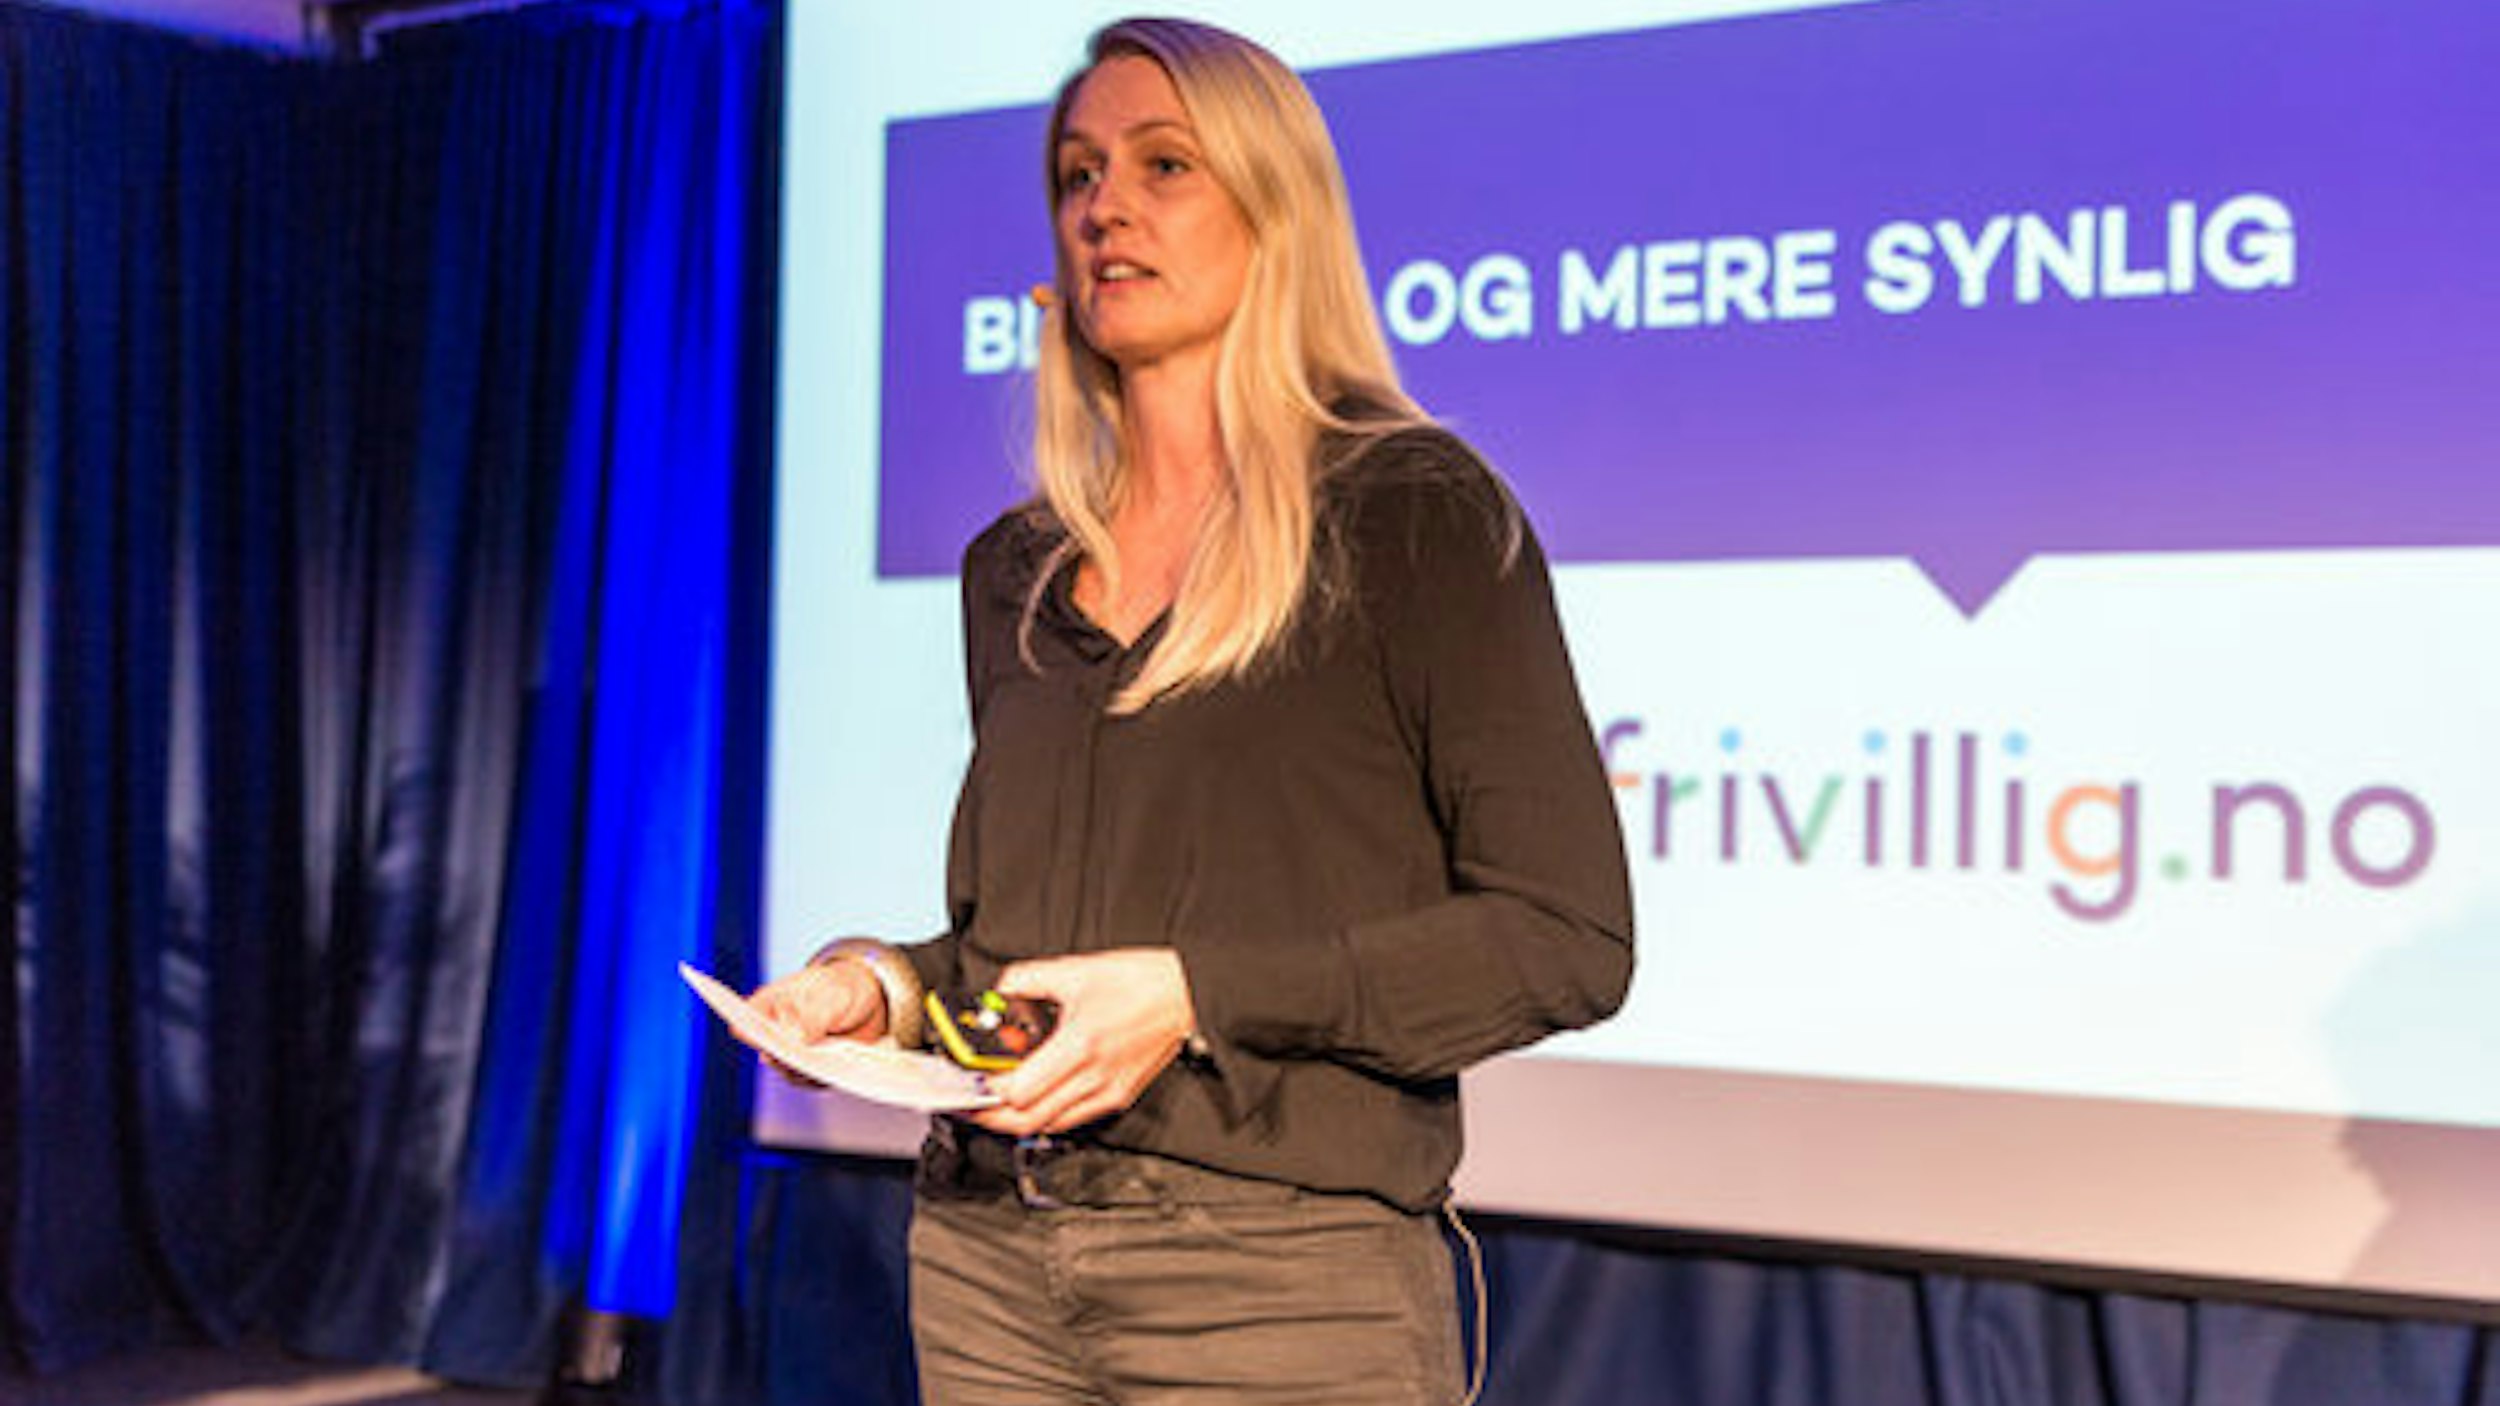 Kvinne som holder presentasjon foran en skjerm med bilde av logoen Frivillig.no